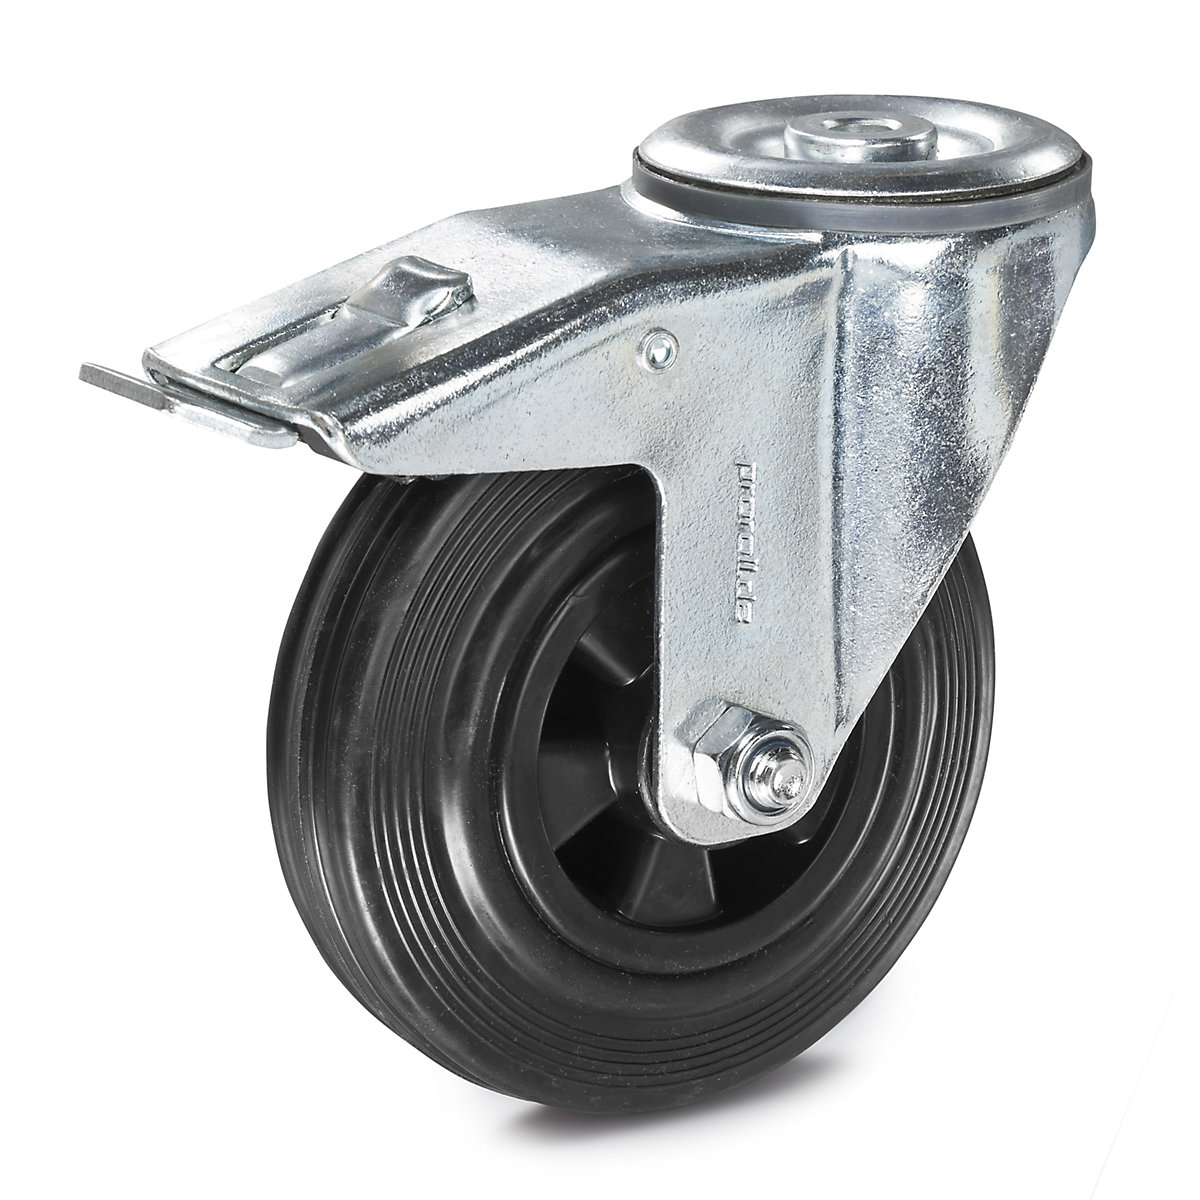 Kotač od pune gume na plastičnom naplatku – Proroll, Ø x širina kotača 80 x 25 mm, okretni kotač s dvostrukom blokadom-3